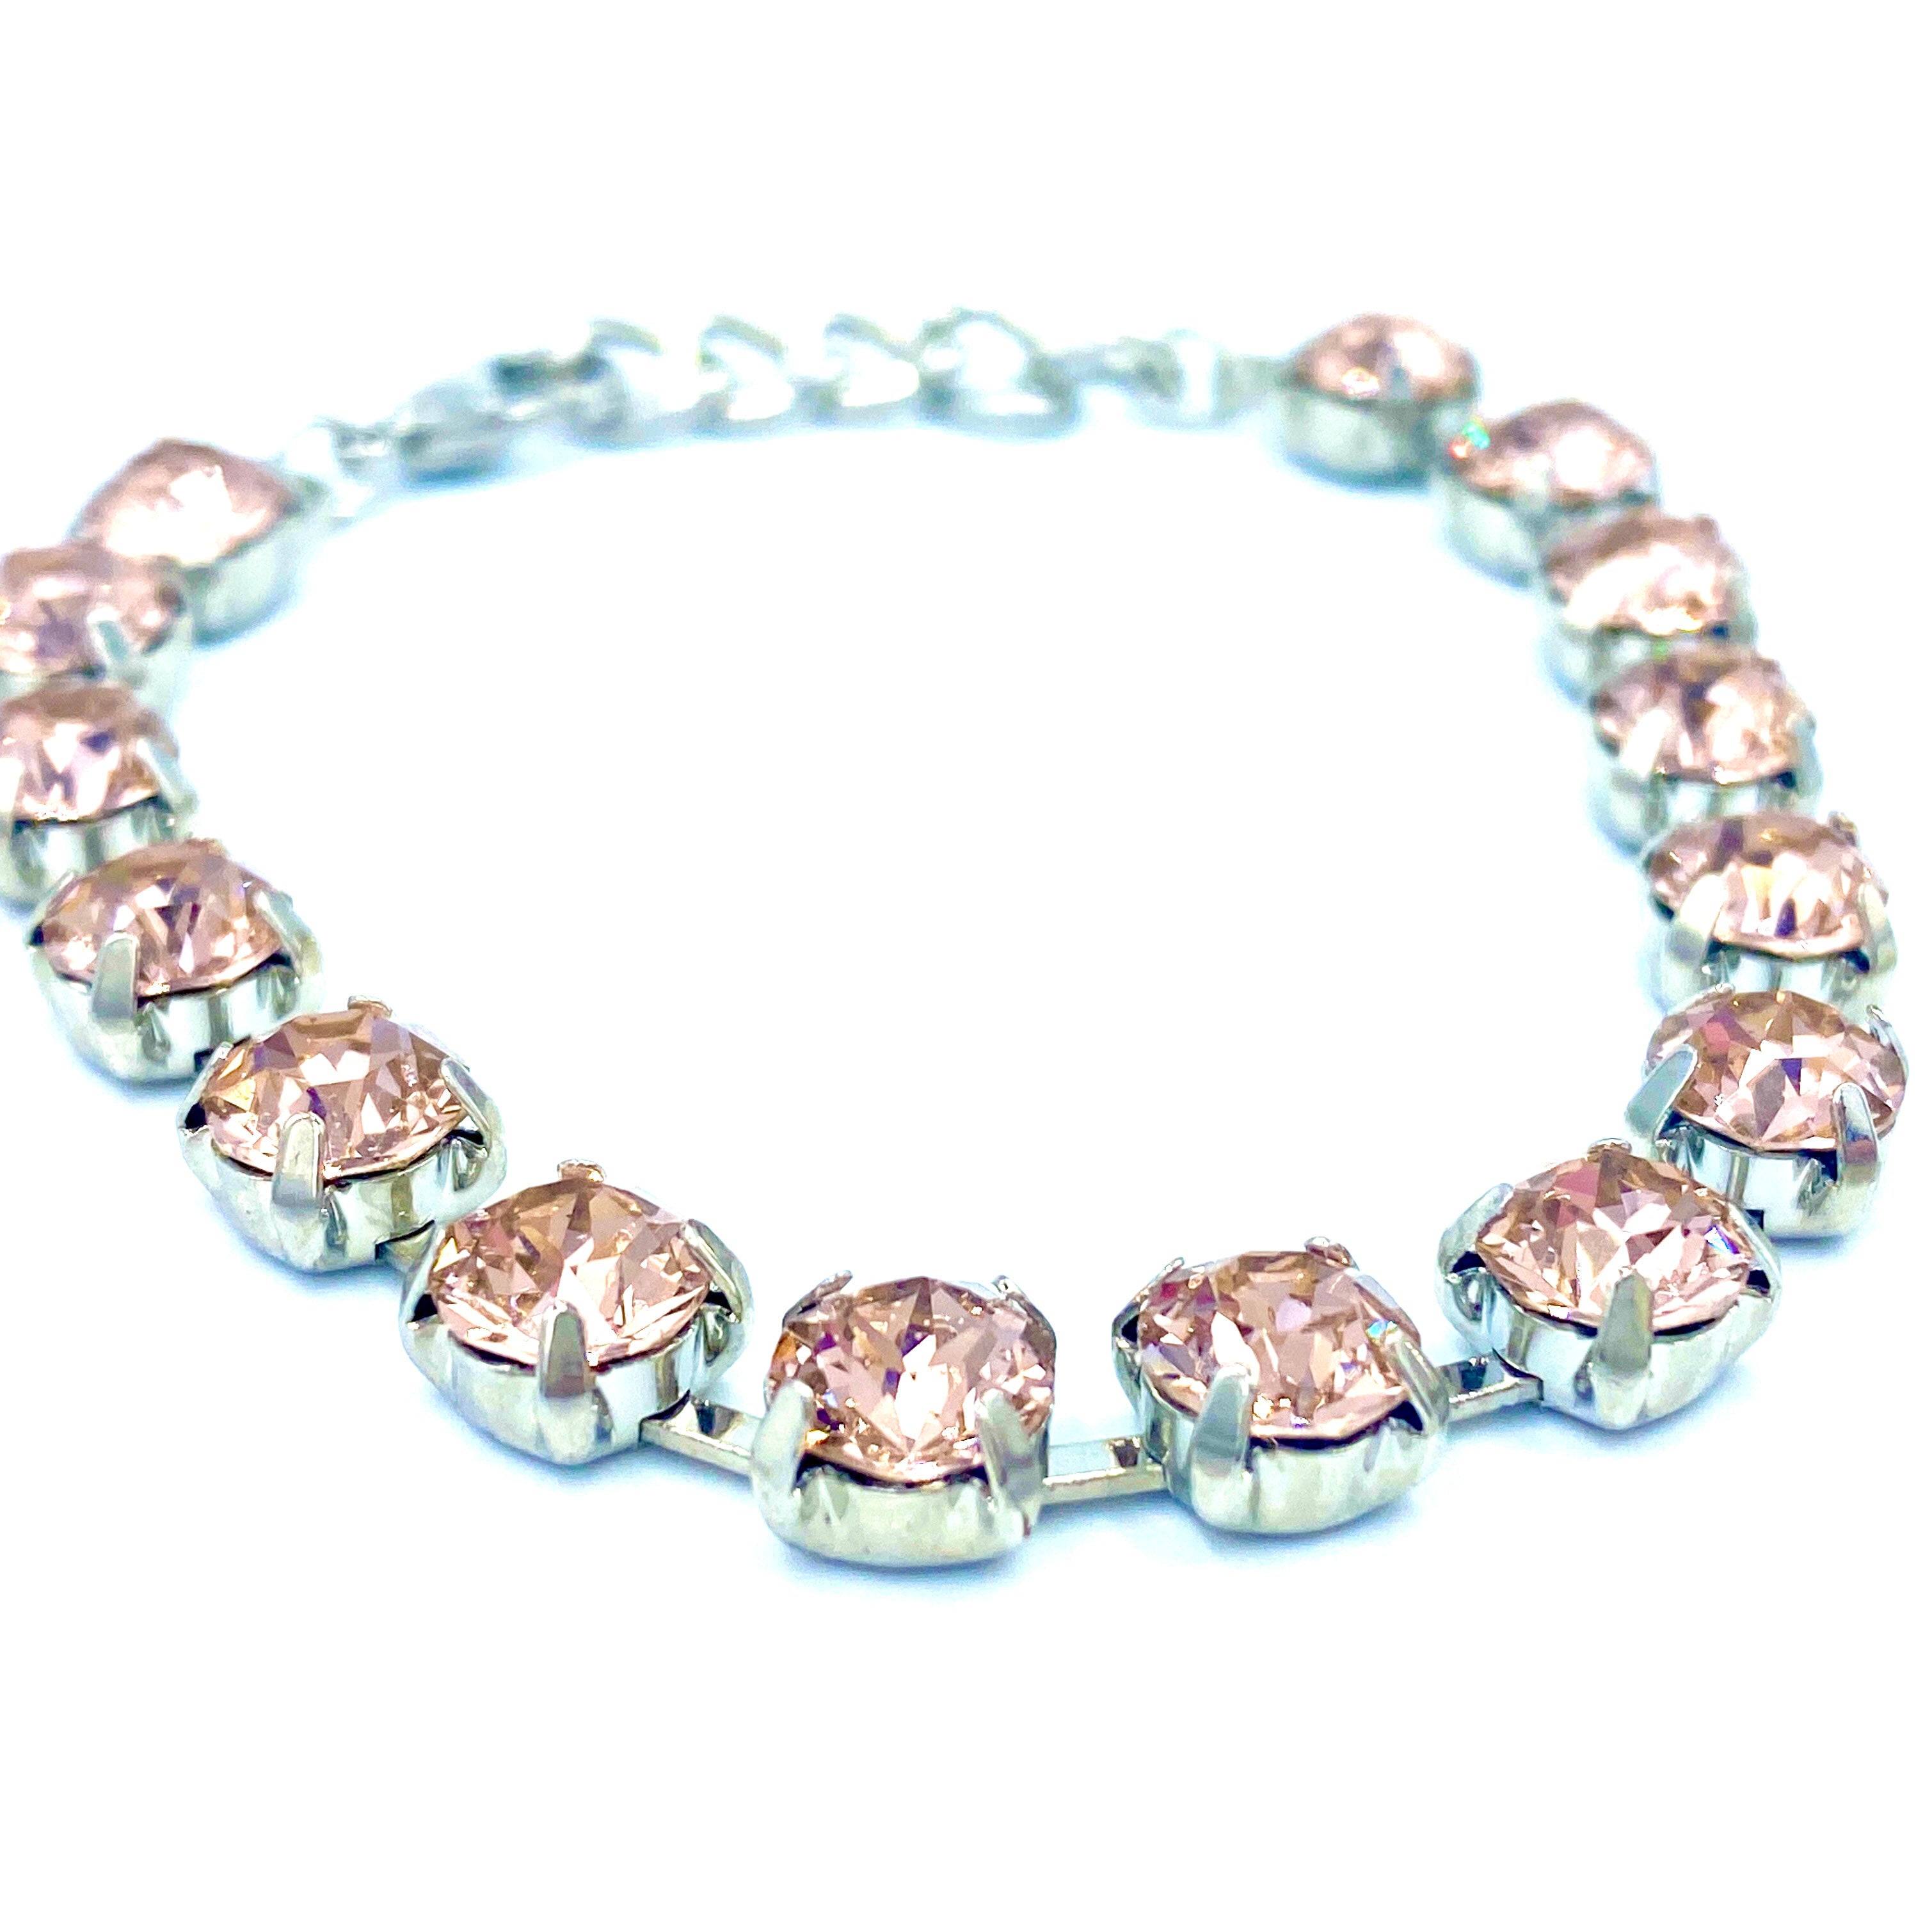 Joanna Bisley Swarovski Crystal Rhodium Bracelet B3484ap - 0